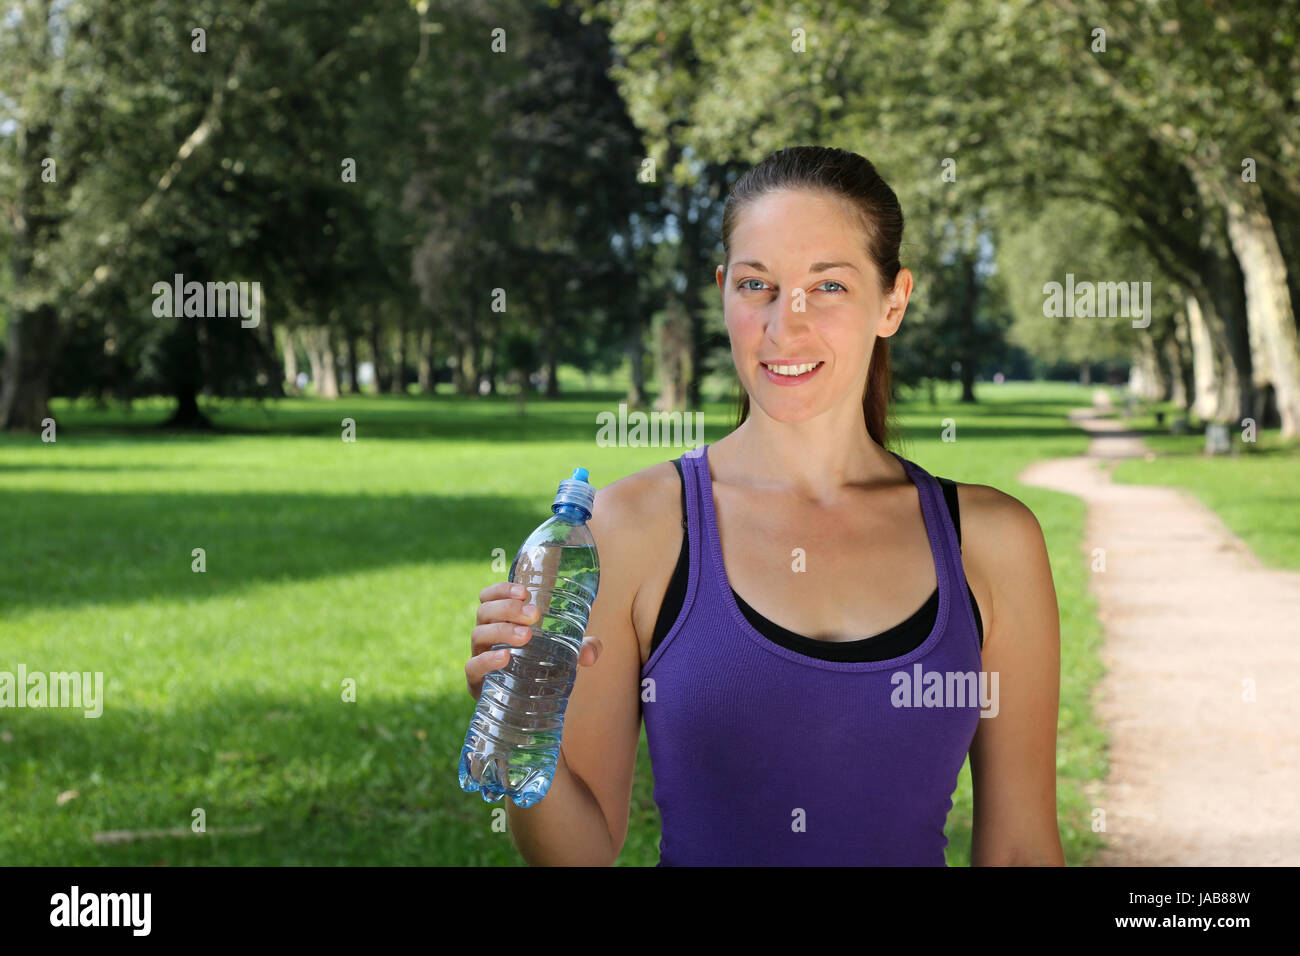 Eine junge sportliche Frau mit einer Flasche Wasser beim Sport oder Laufen Stock Photo